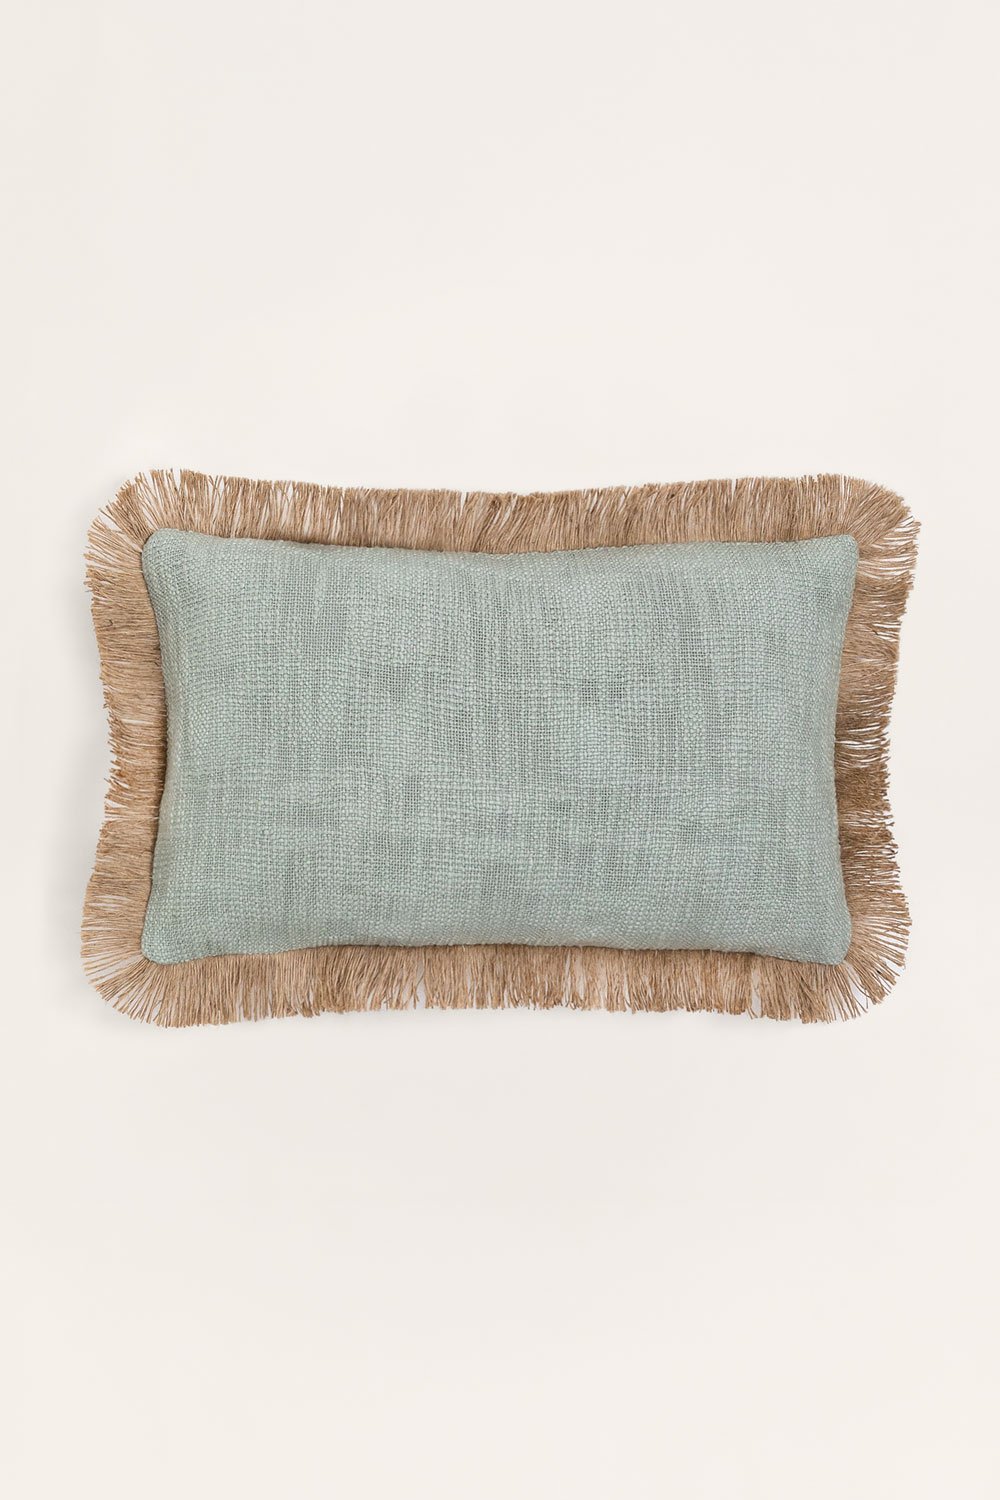 Cuscino Rettangolare in Cotone (30x50 cm) Paraiba, immagine della galleria 1